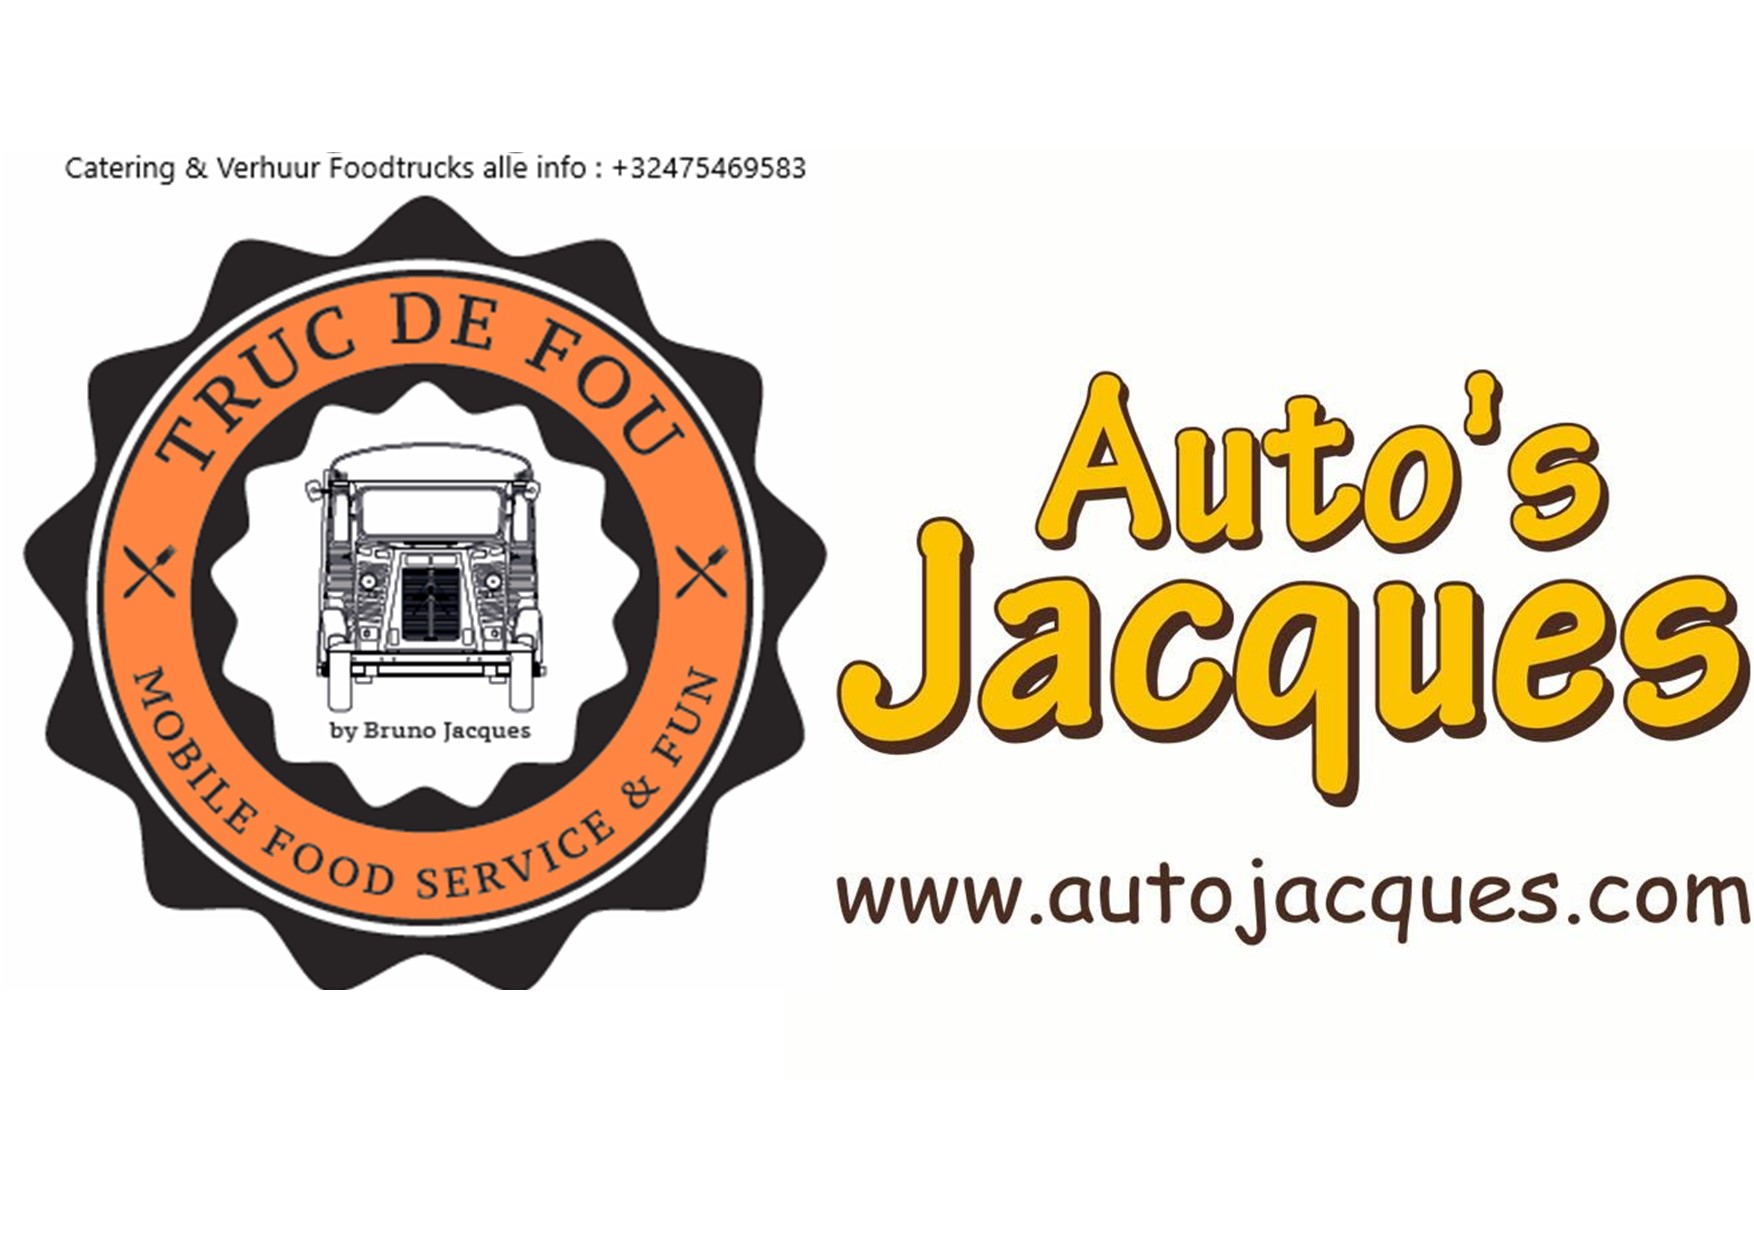 Auto Jacques